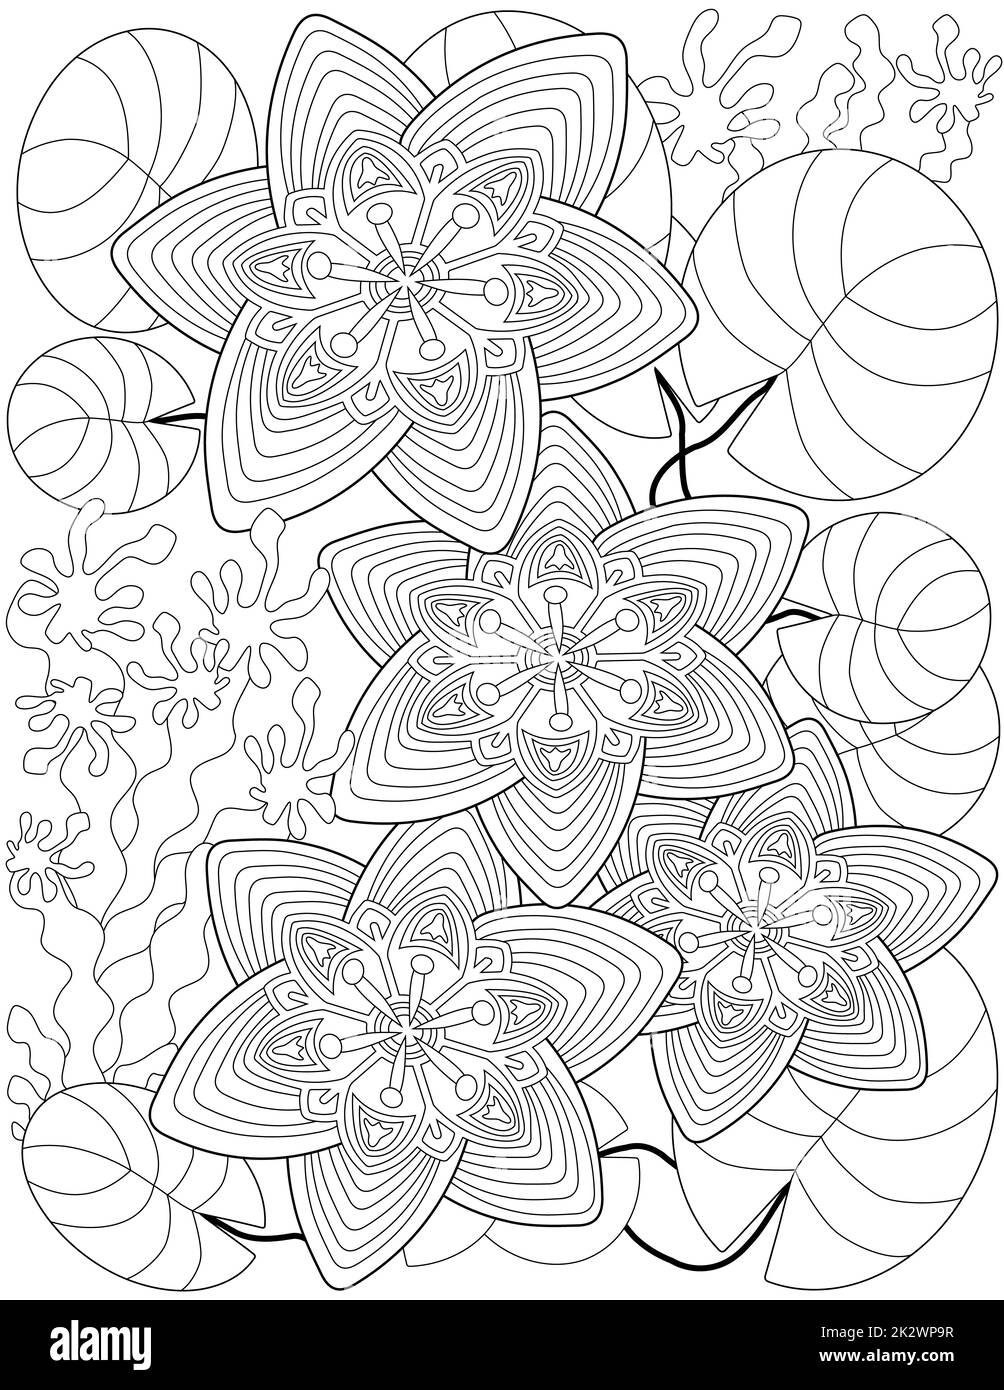 Vektorlinie, die stilisierte vier Lotusblüten zeichnet, schwebende Blätter des Sees. Digital lineart Bild aufwändige Wasserlilie Schwimmteich mit Blumenmuster. Umreißen Sie Kunstwerke im Pflanzendesign. Stockfoto